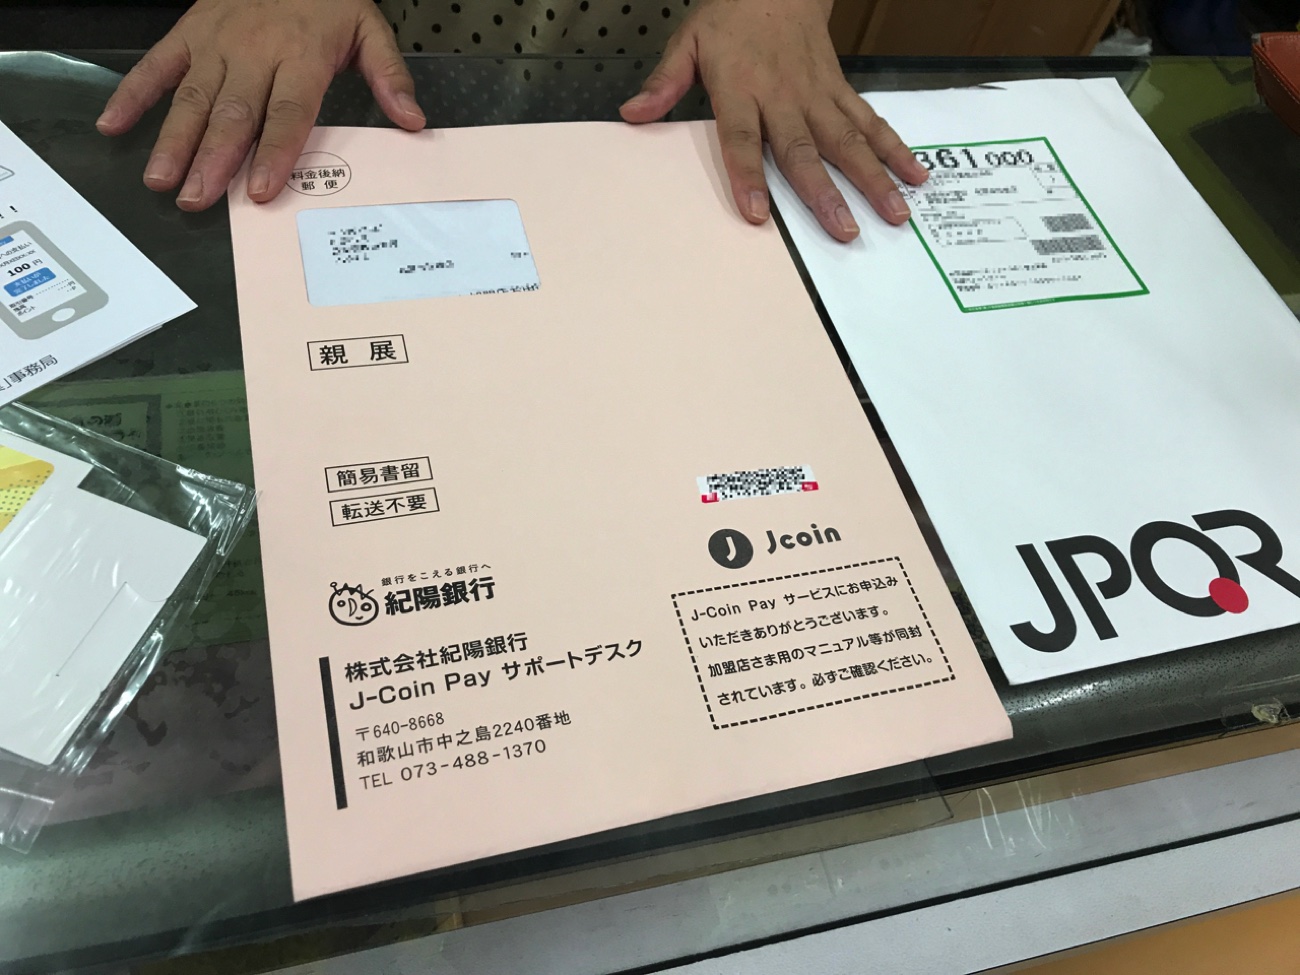 話題の統一qr Jpqr の実際をローンチ初日の和歌山で見てきた モバイル決済最前線 Engadget 日本版